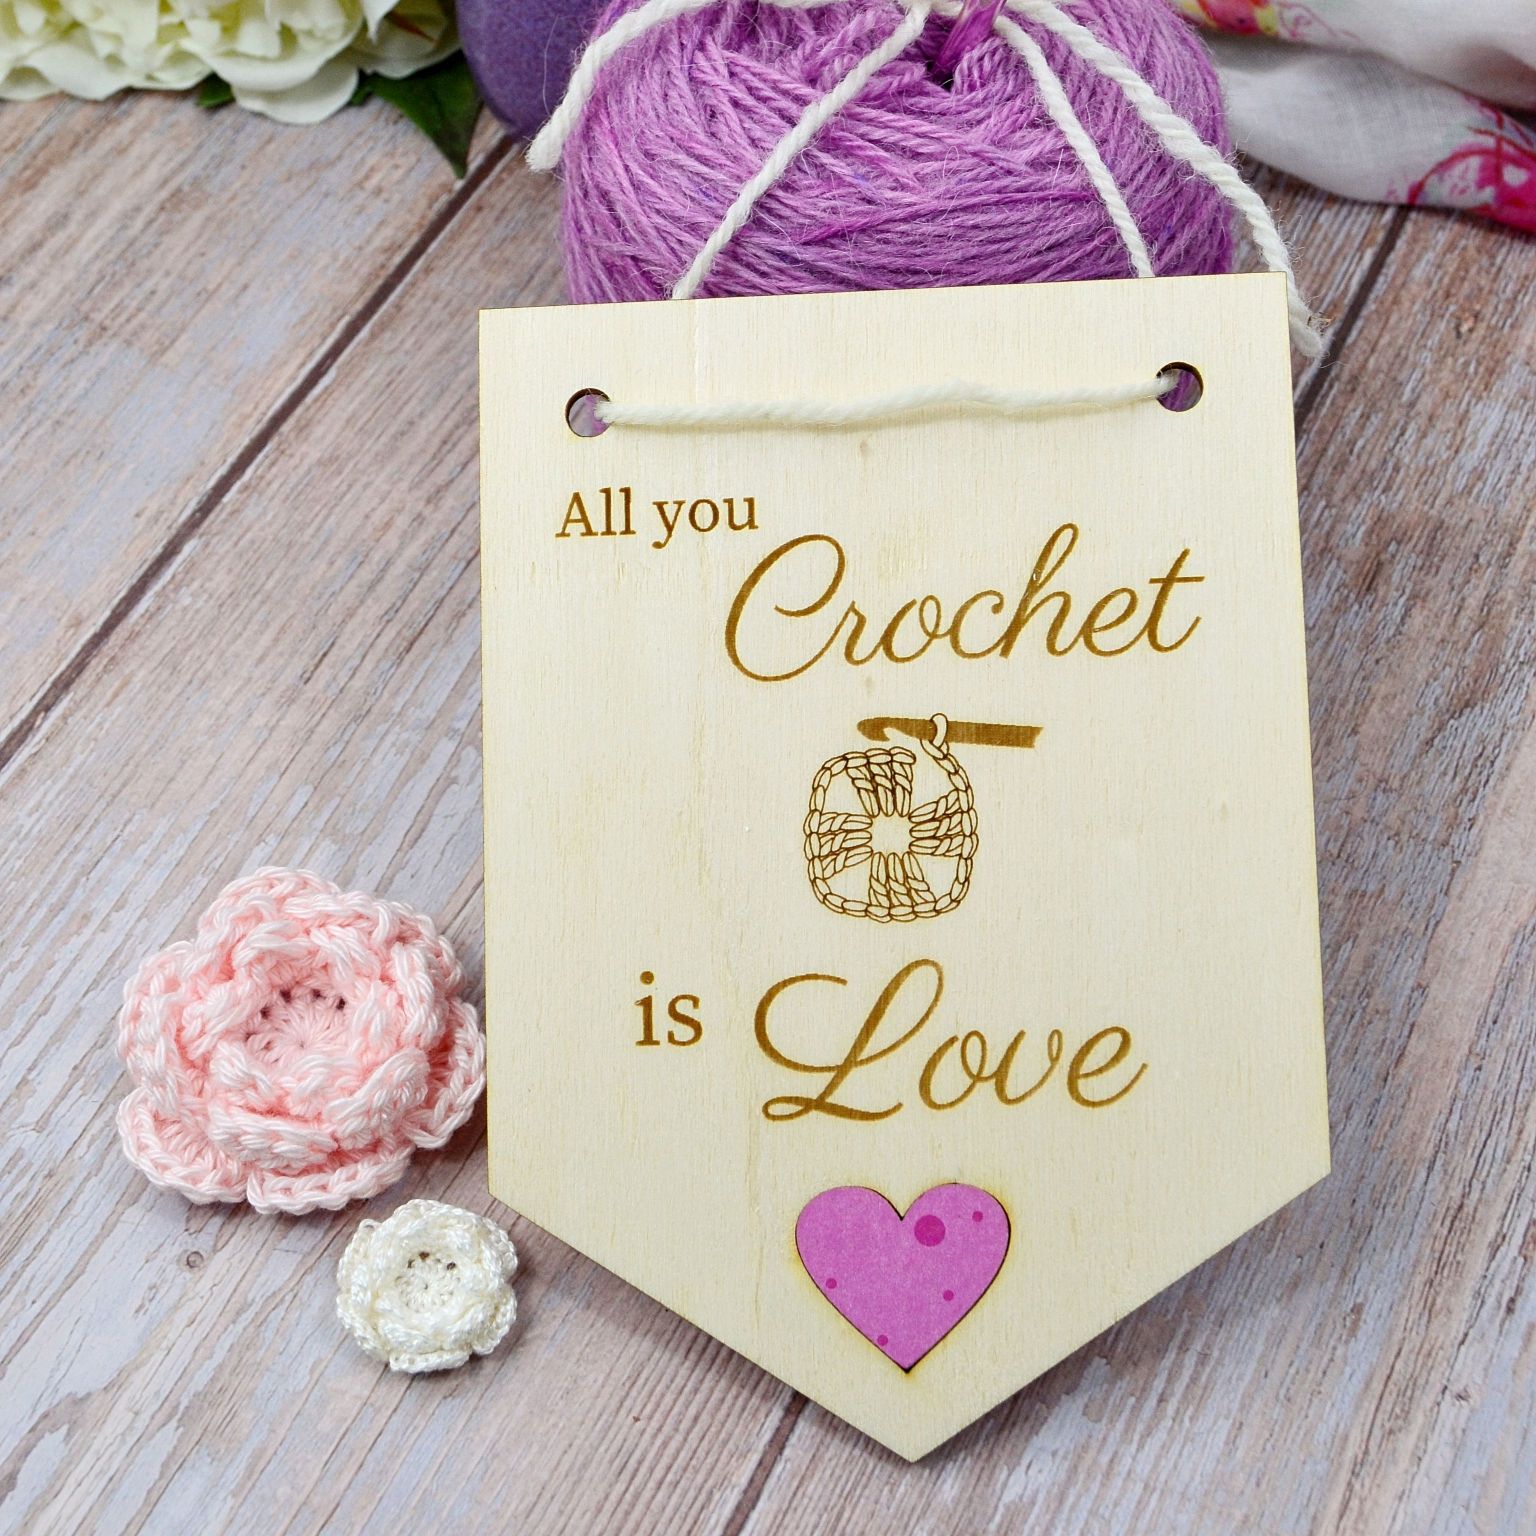 Holzwimpel "All you crochet is love" mit Häkelblumen